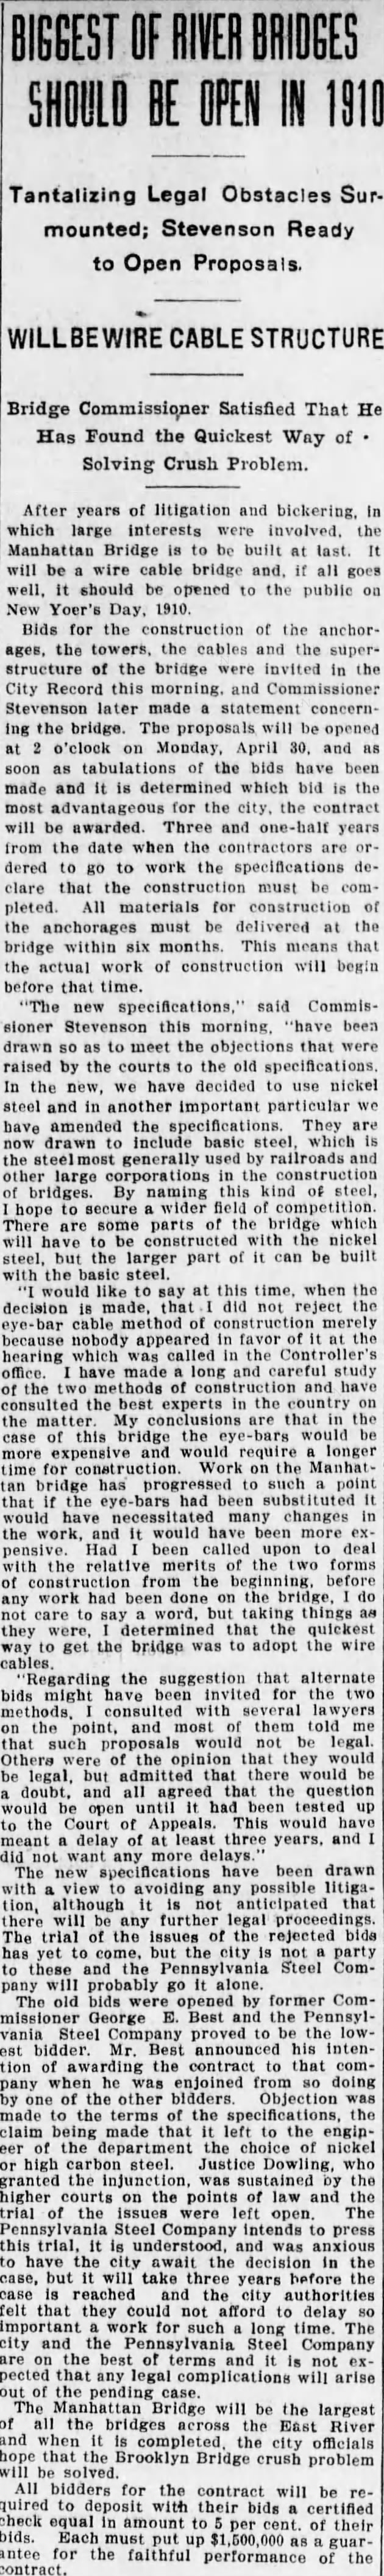 Biggest of River Bridges Should Be Open in 1910